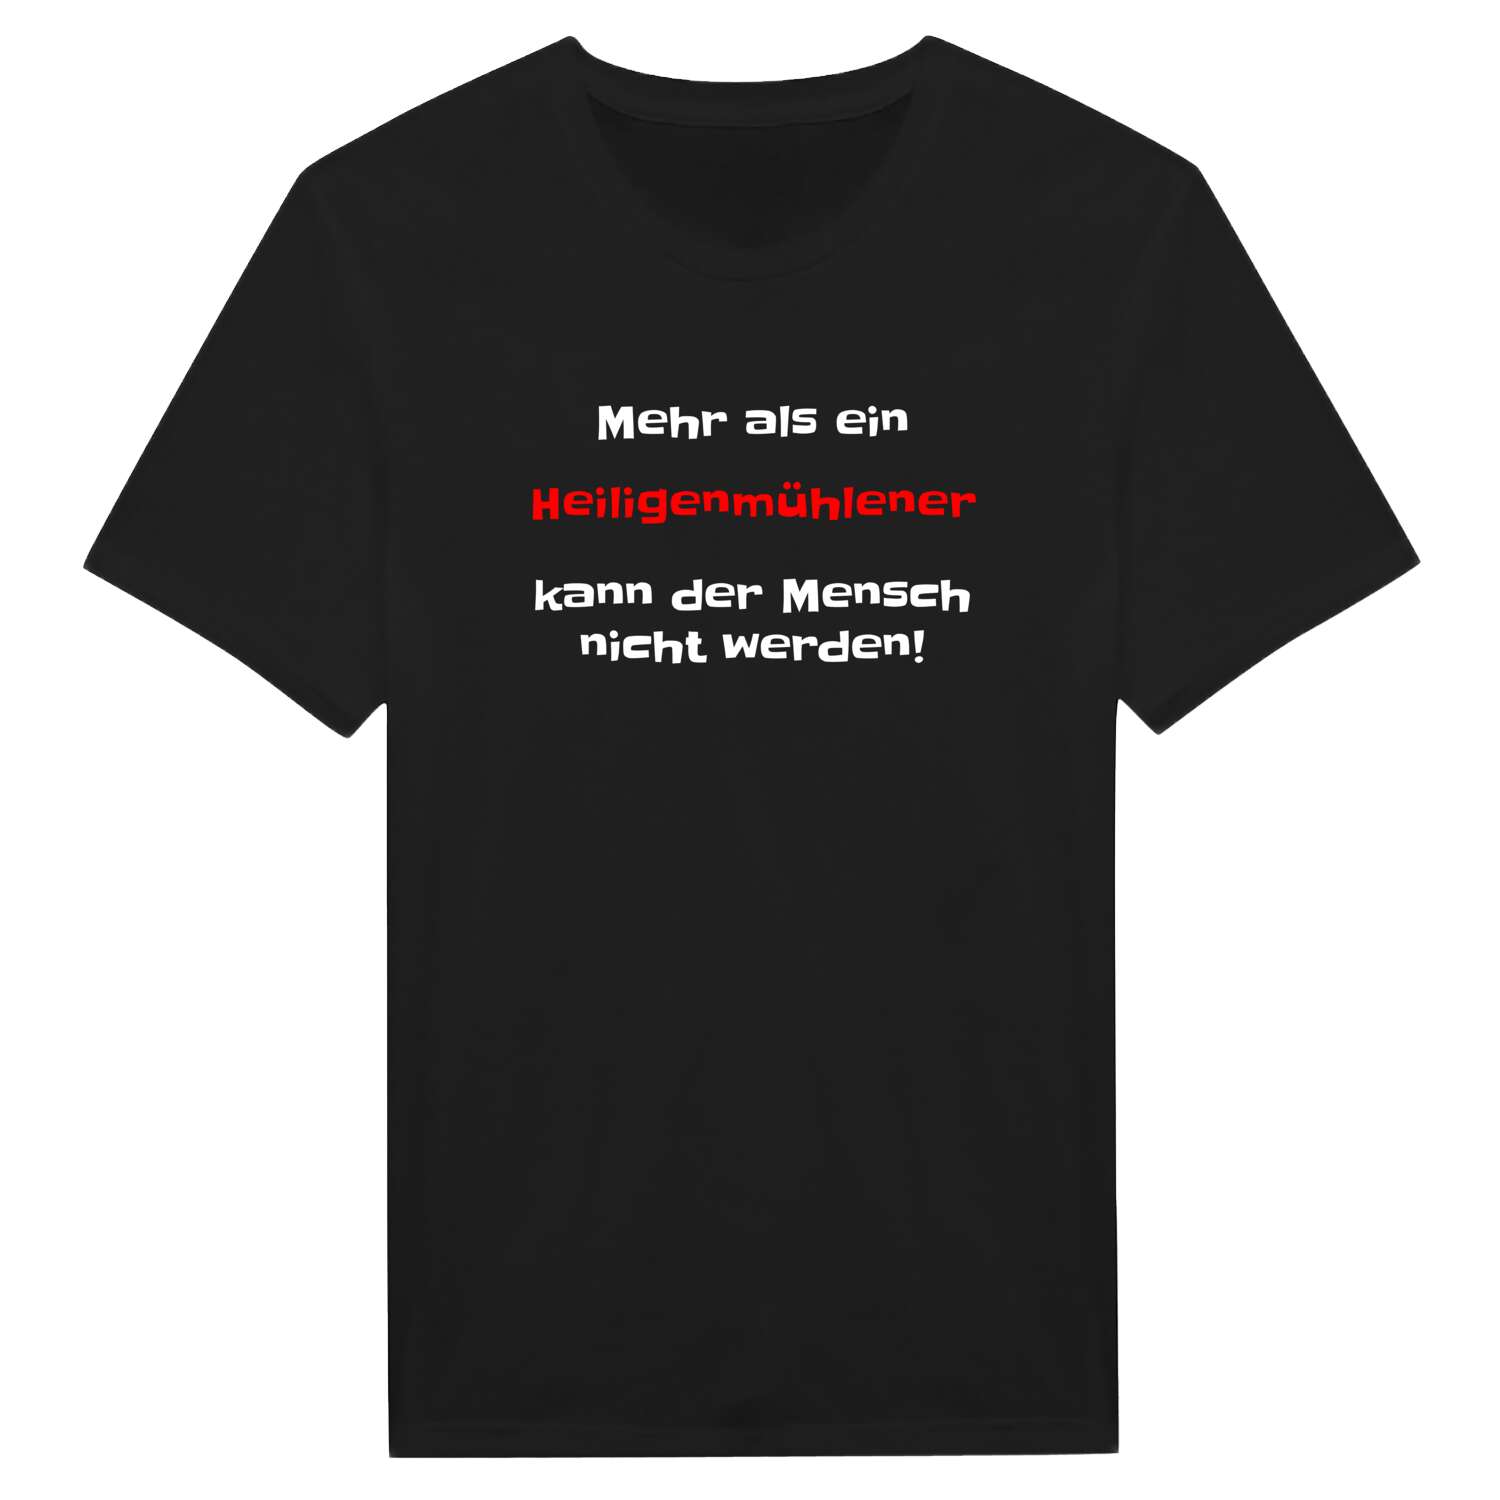 Heiligenmühle T-Shirt »Mehr als ein«